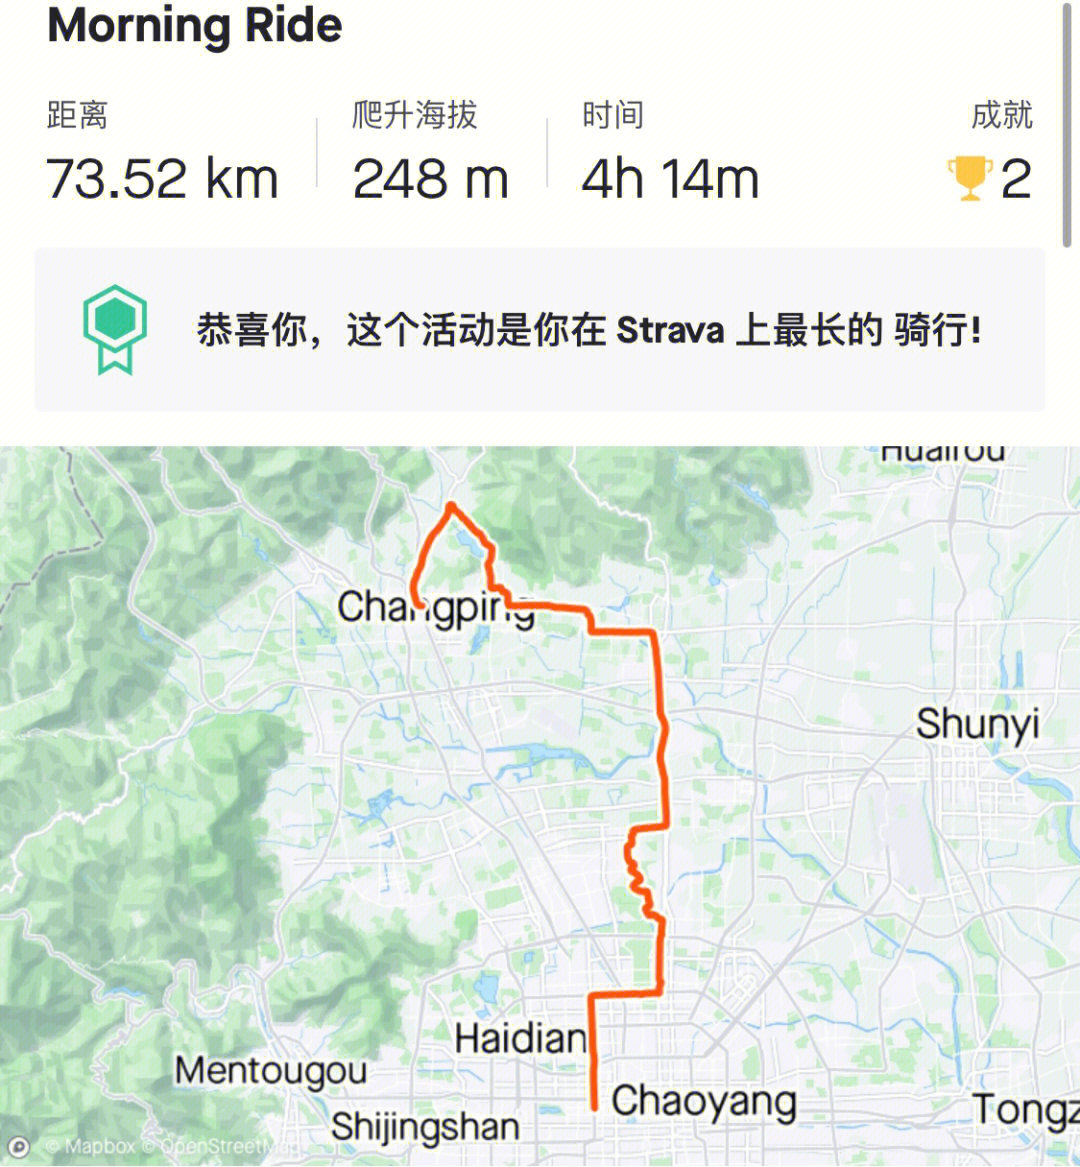 早上6:00北四环出发,本来是想走昌平新开的42km骑行道,结果公园有活动